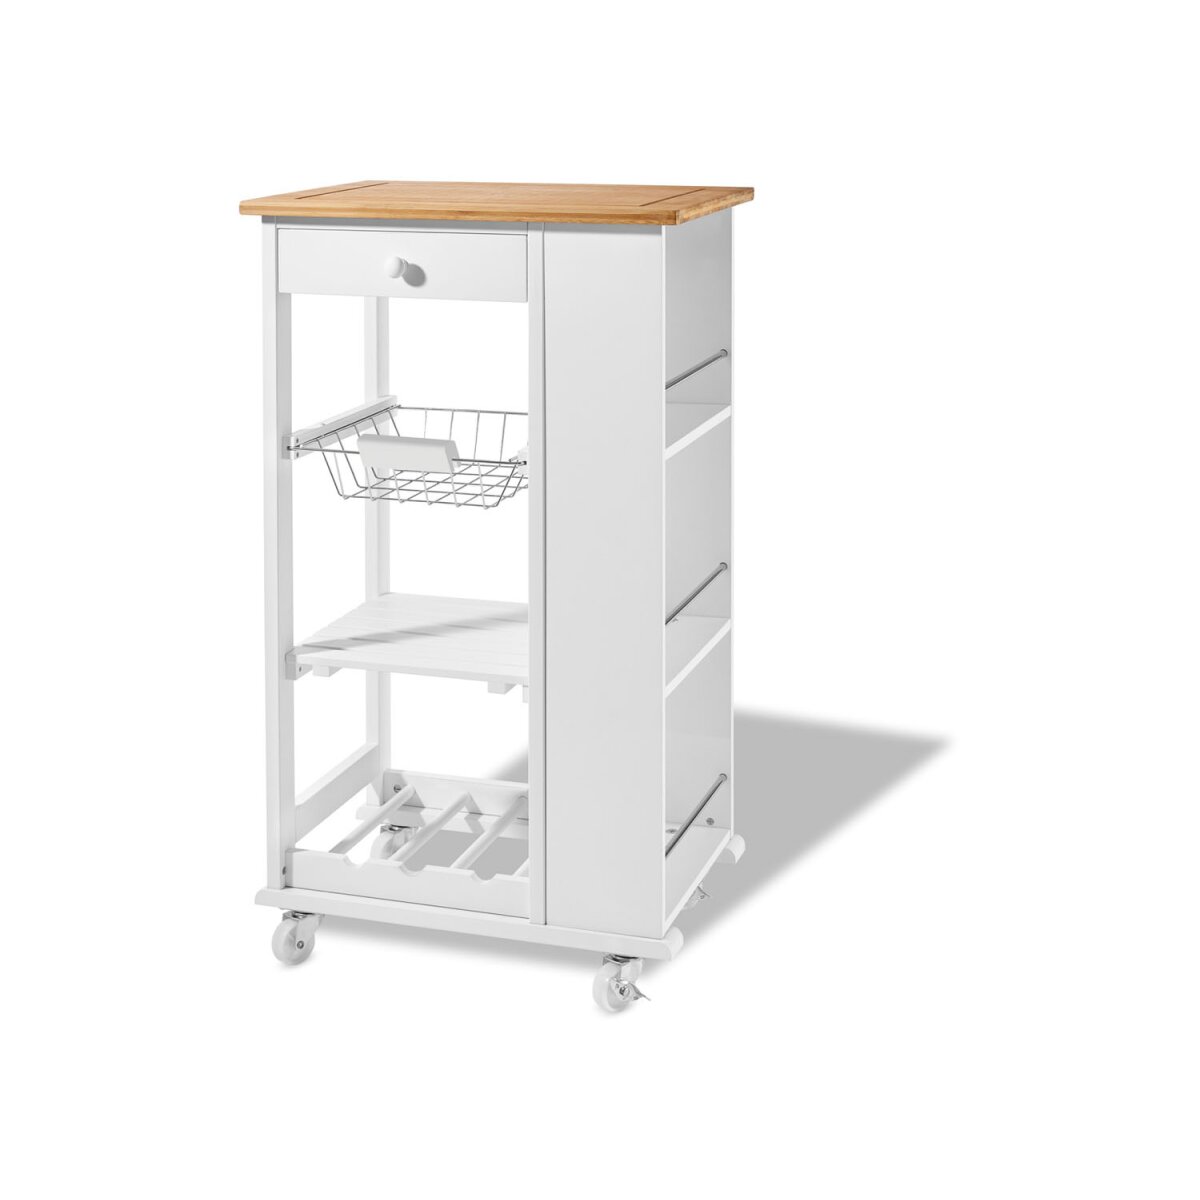 LIVARNO home Küchentrolley mit Bambusholz, weiß/braun - B-Ware  Transportschaden Kosmetisch, 37,99 €